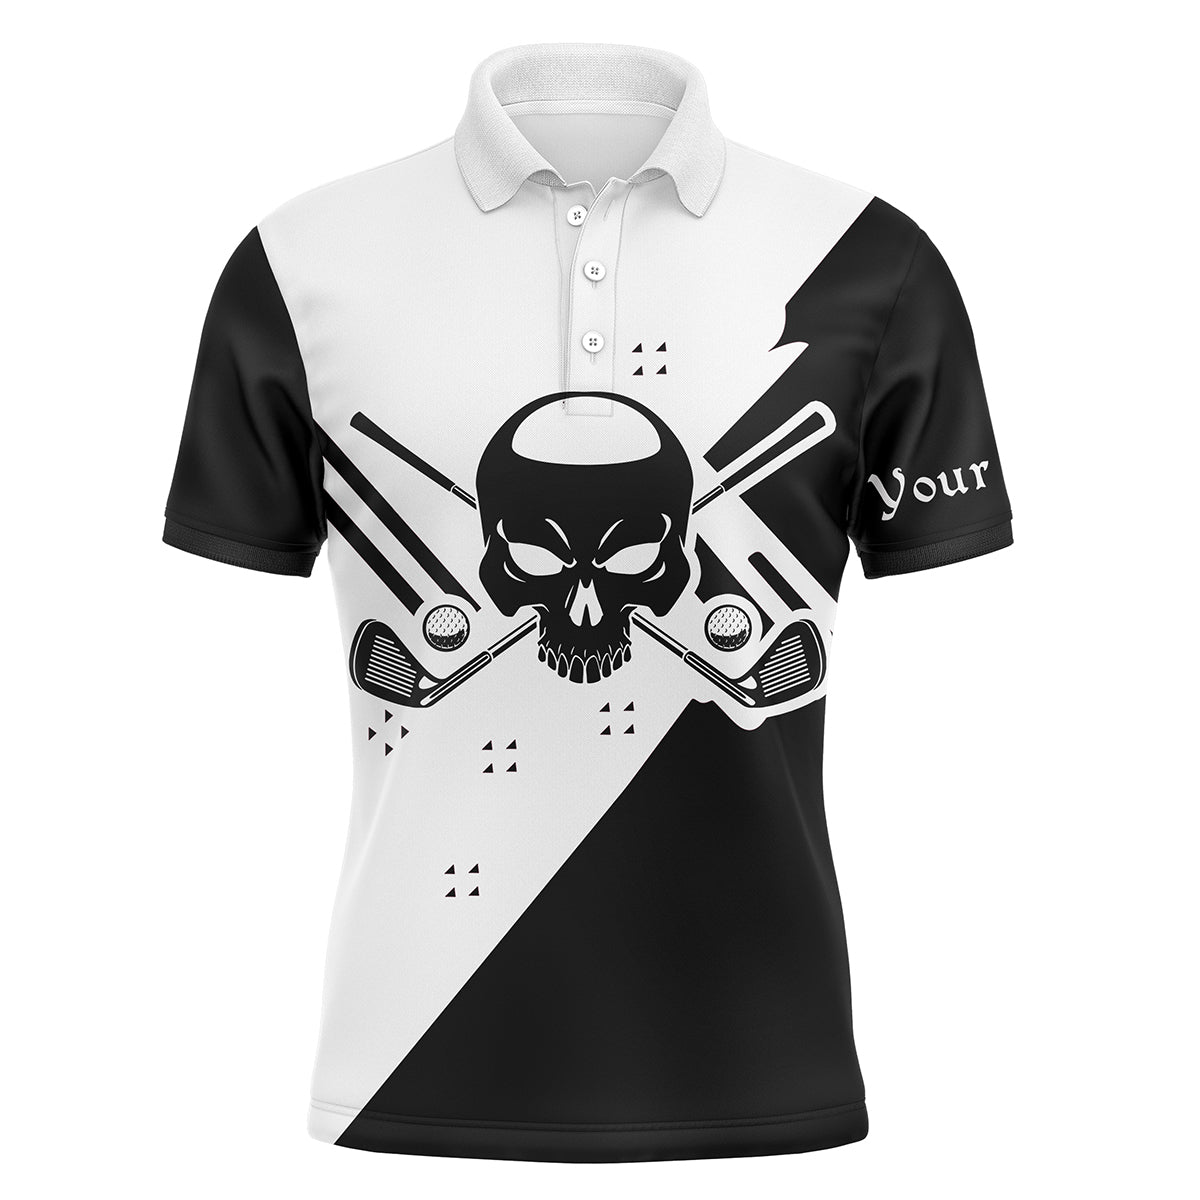 Golf Custom Name Men Polo Shirt - Skull  Black & White Apparel - Personalized Best Gift For Golf Lover, Team, Golfer